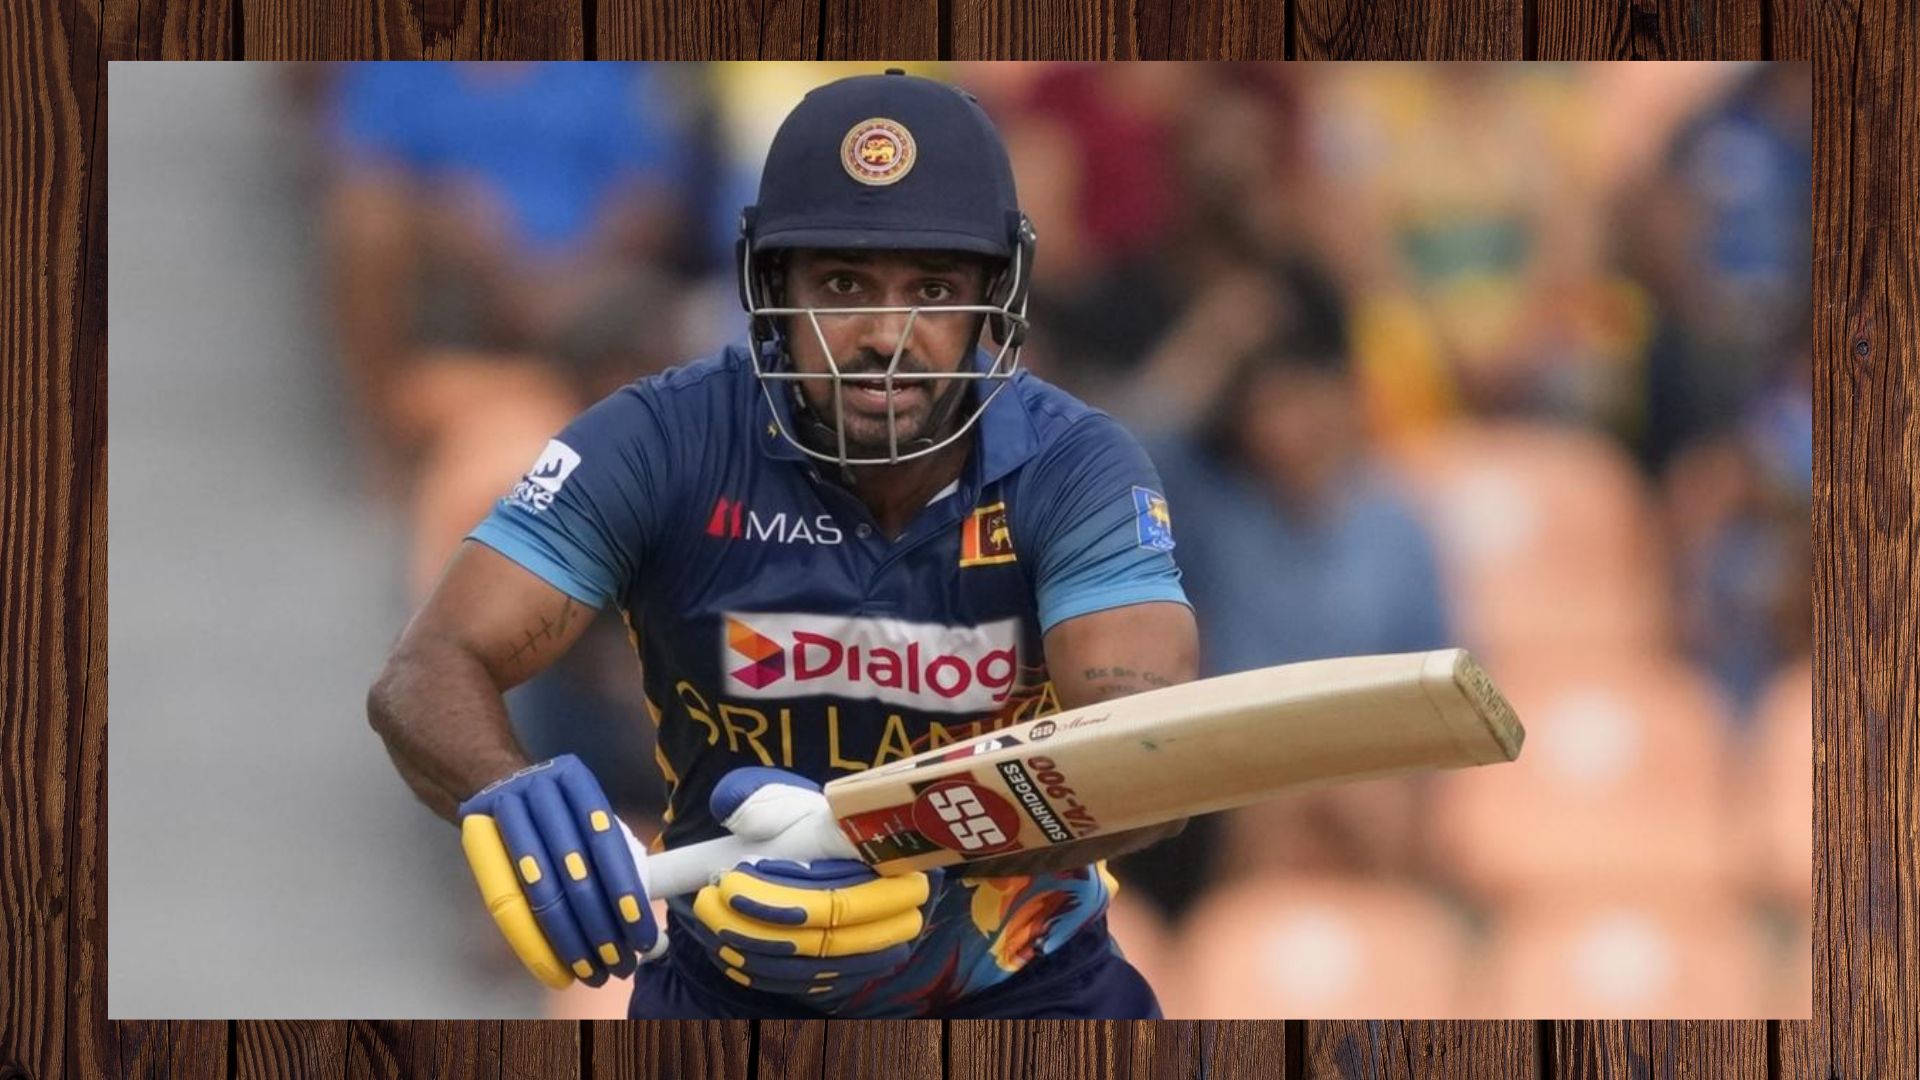 T20WC खेलने पहुंचे श्रीलंका के क्रिकेटर दनुष्का पर रेप का आरोप, सिडनी में अरेस्ट